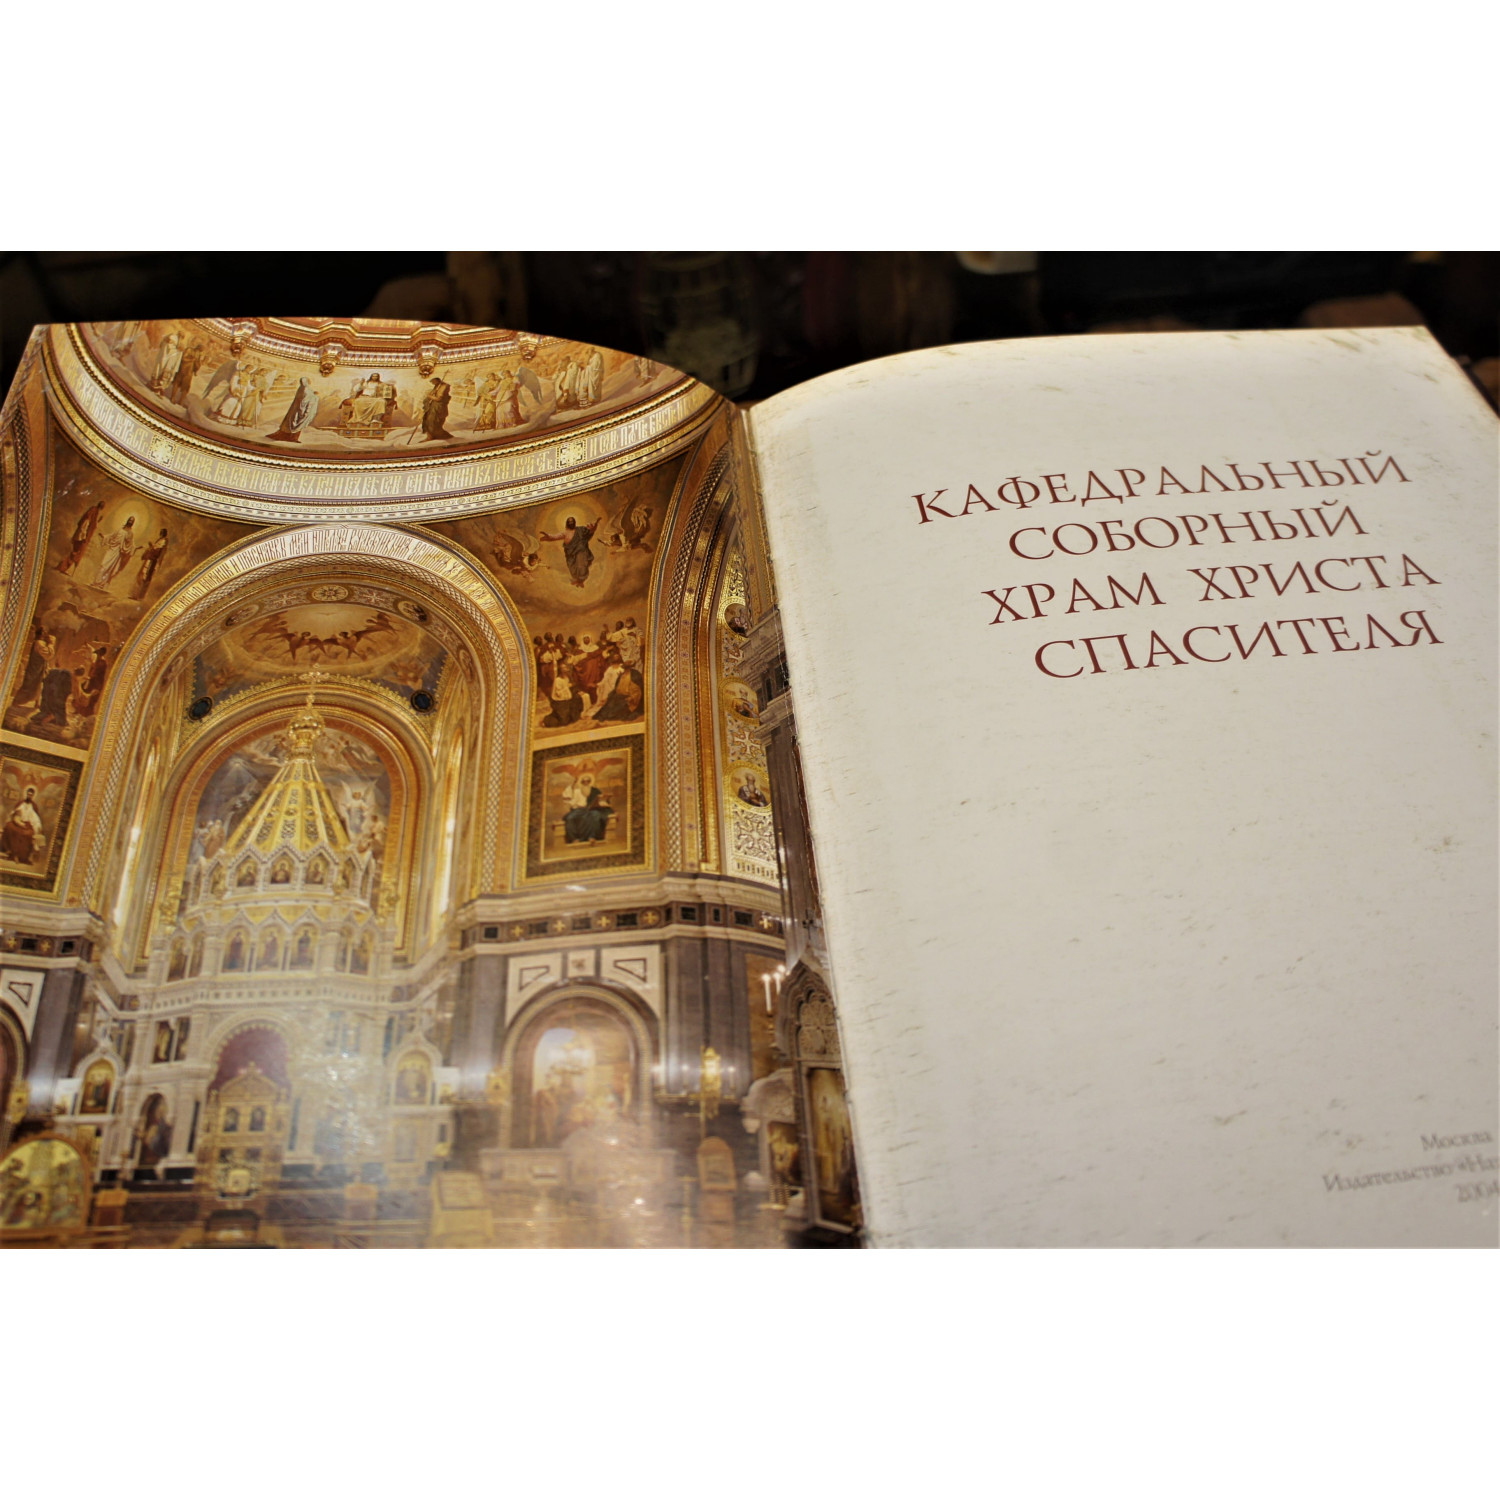 Кафедральный соборный храм Христа Спасителя в кожаном переплете ручной работы